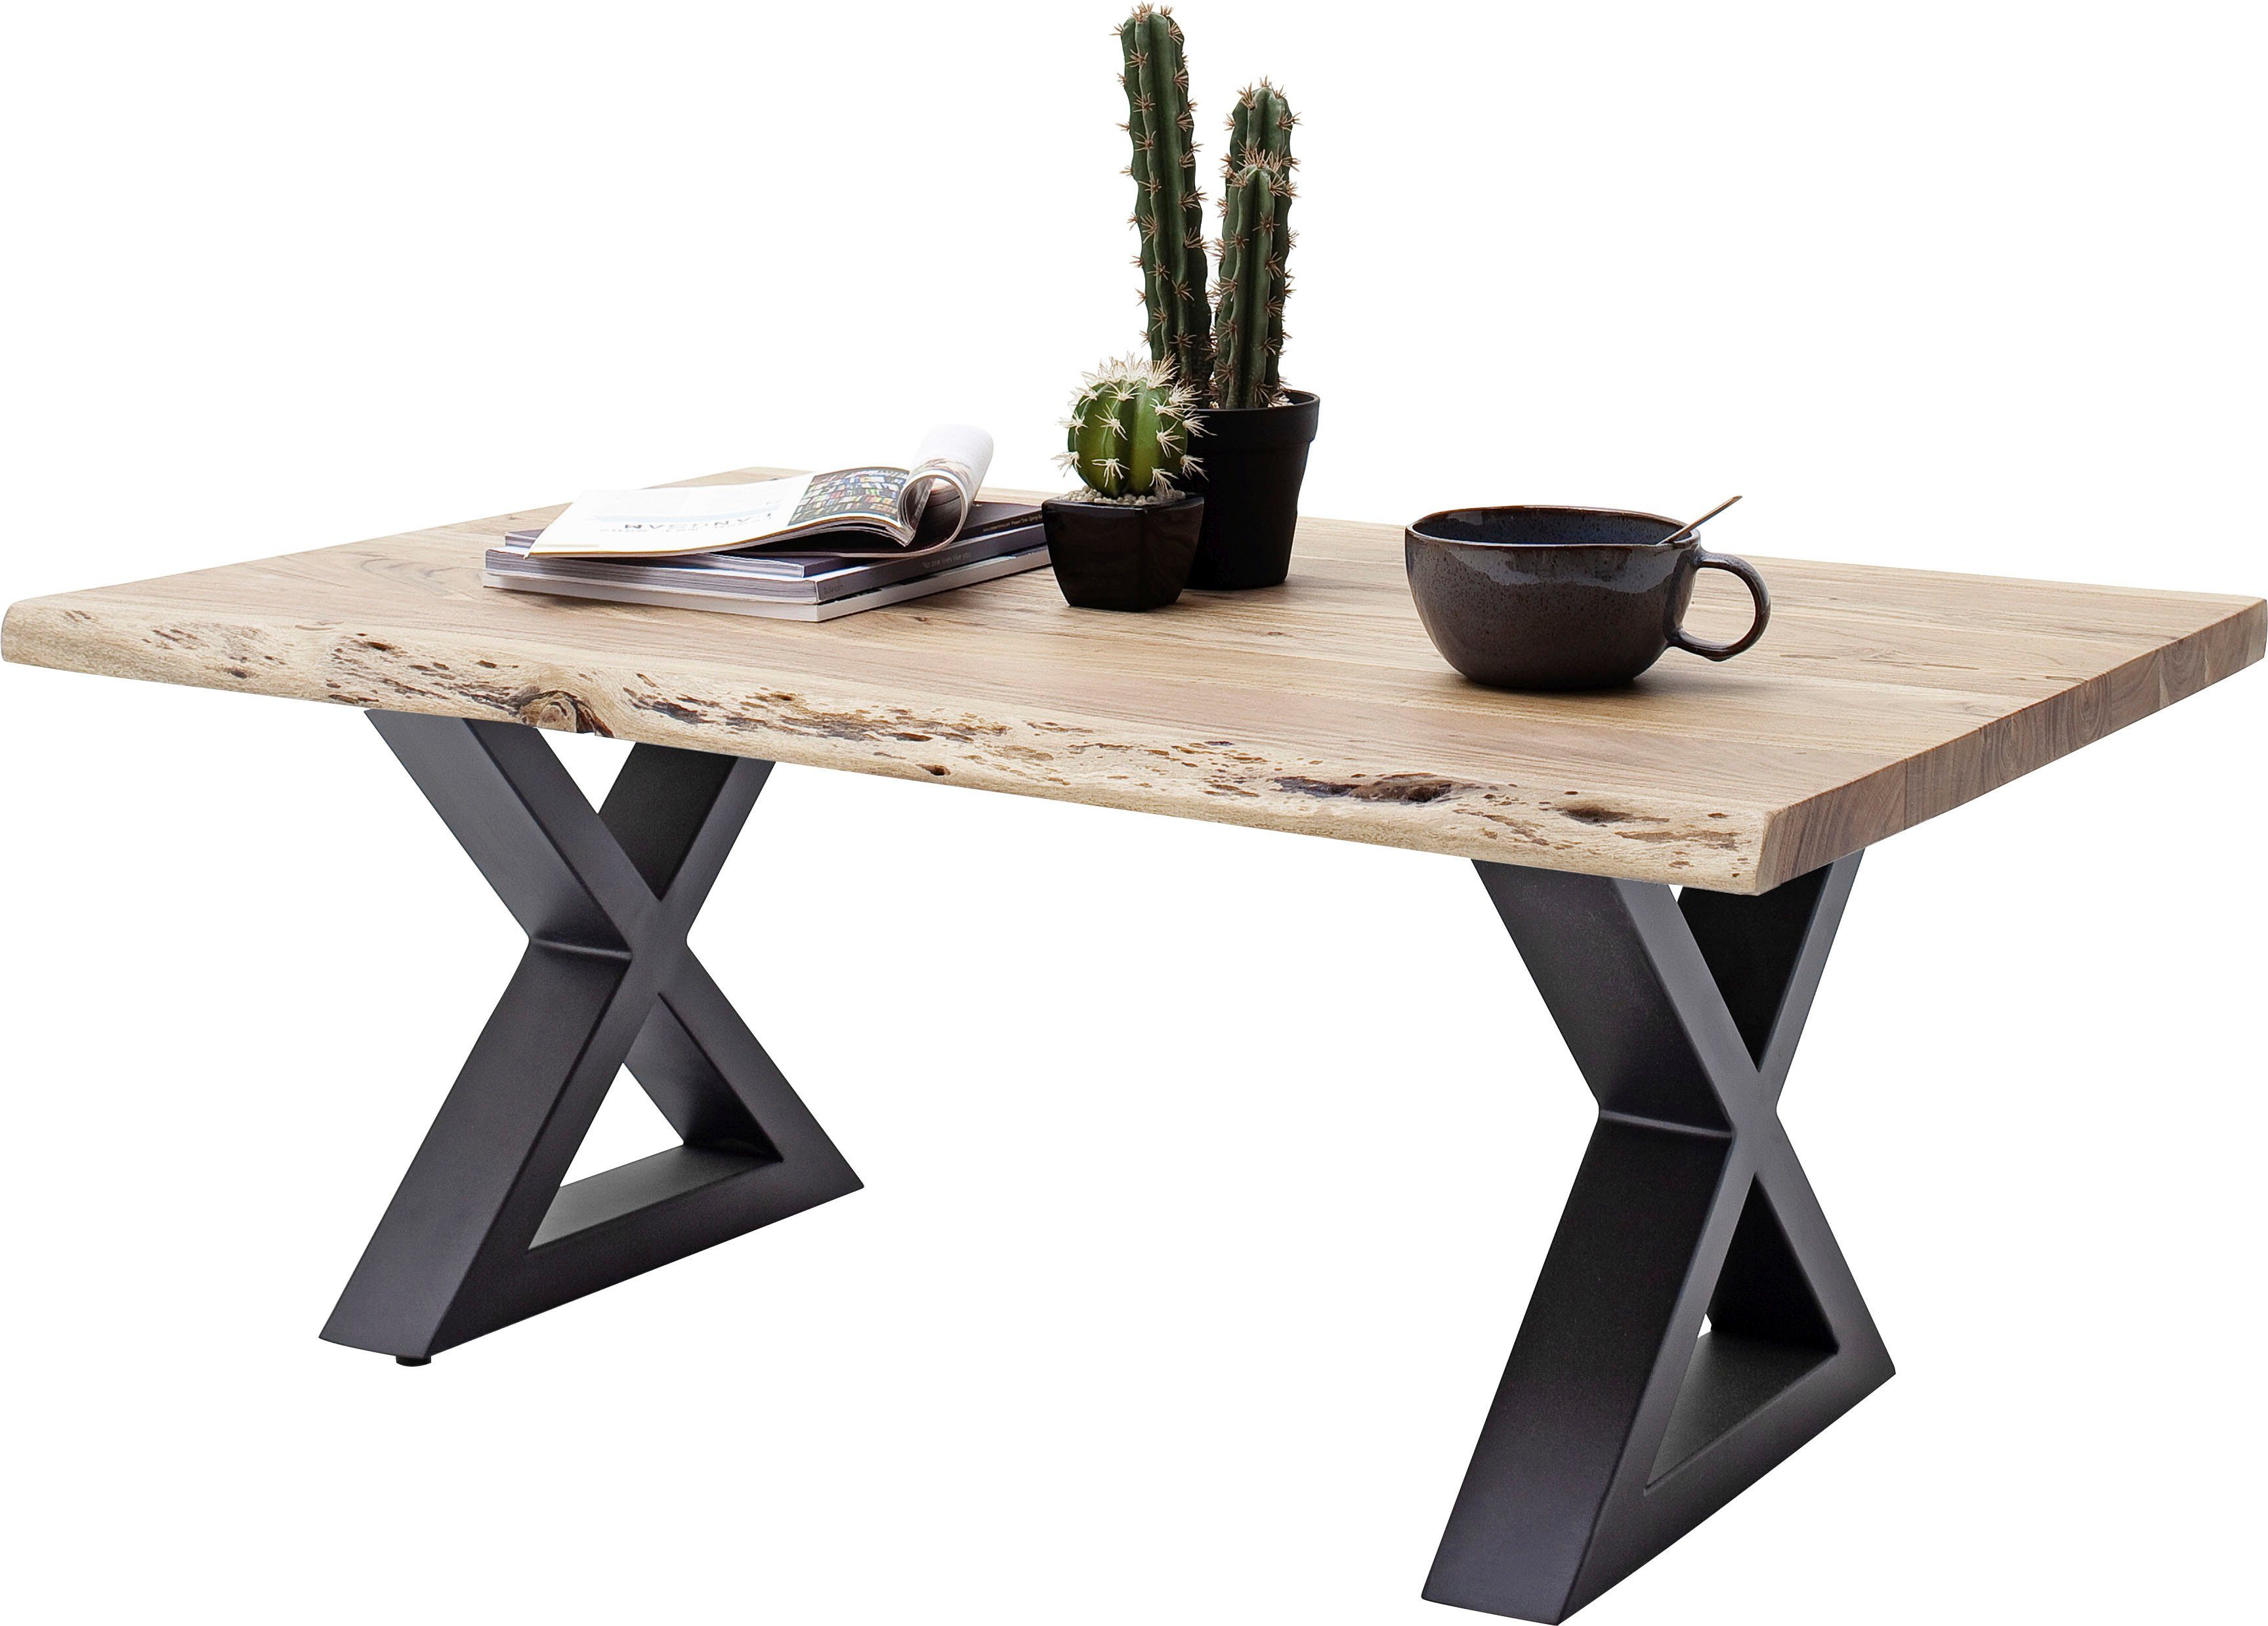 MCA furniture Baumkantentisch, Couchtisch Massivholz mit Baumkante, Rissen und löchern